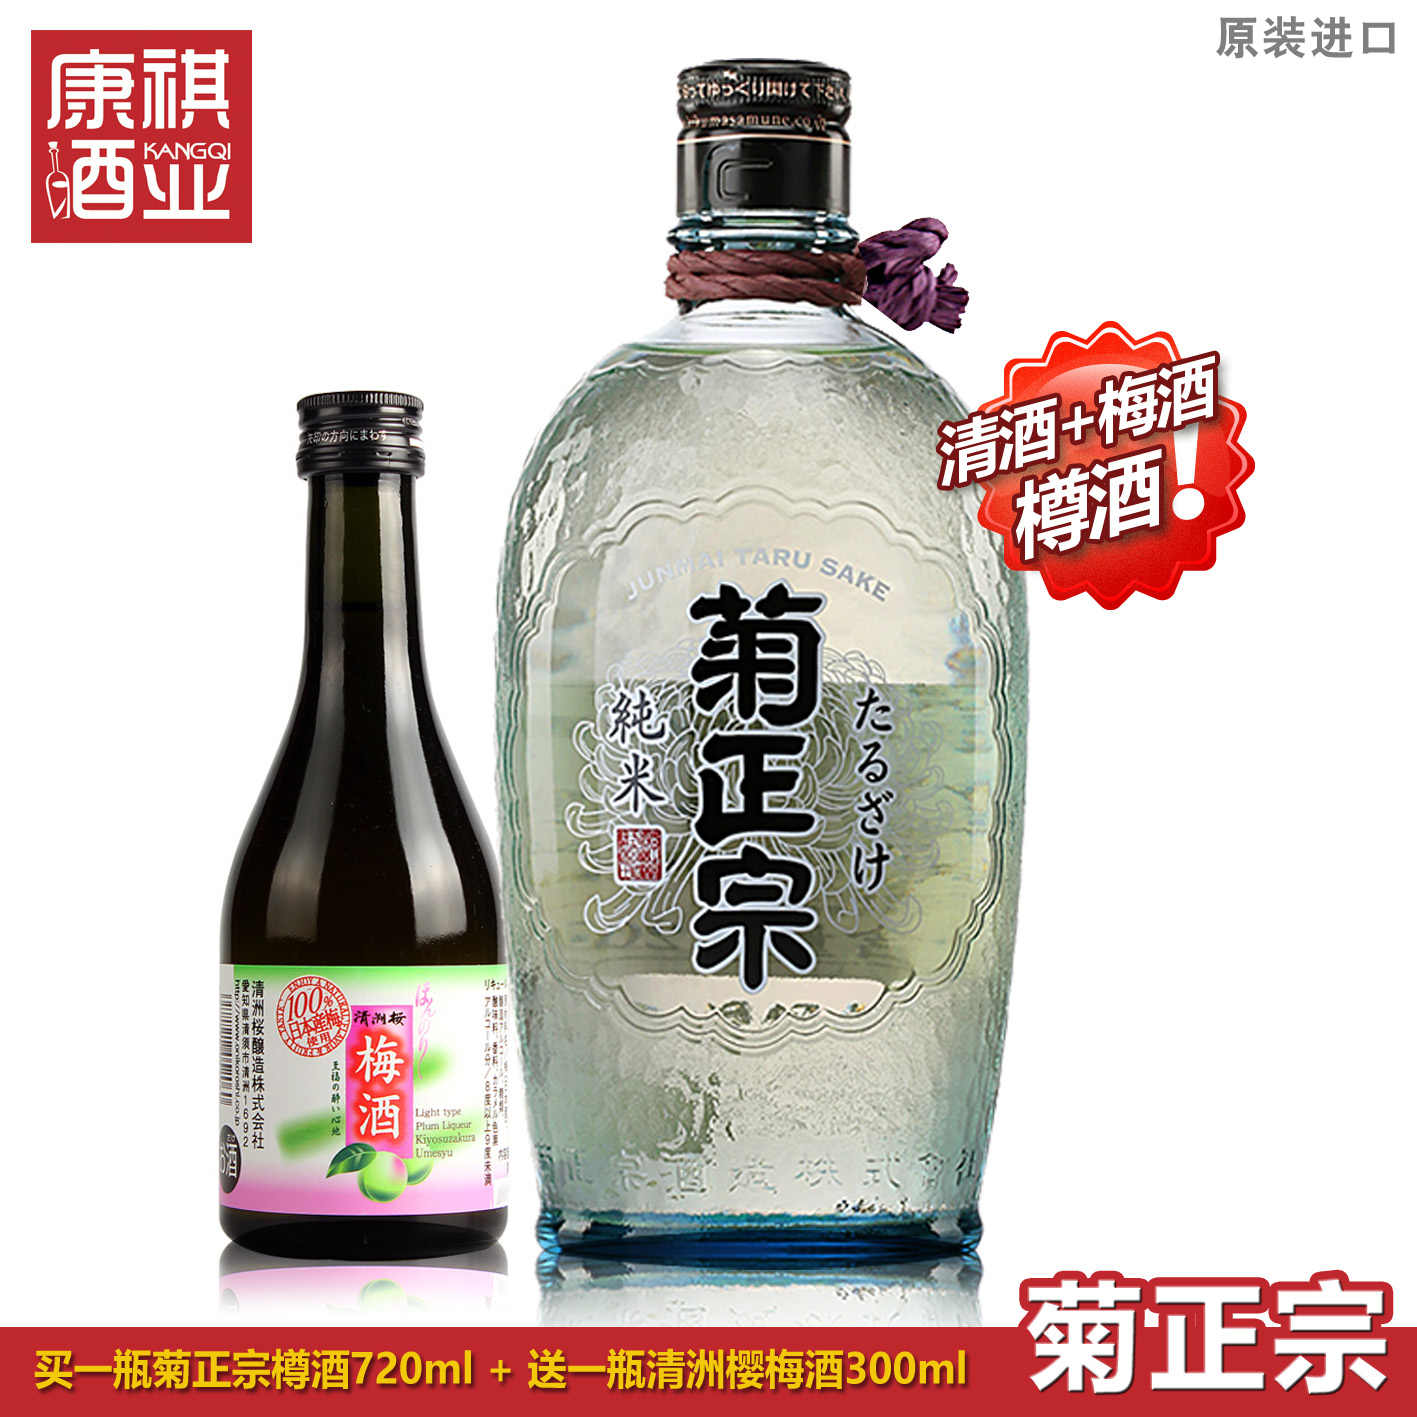 日本樽酒清酒-新人首单立减十元-2022年7月|淘宝海外